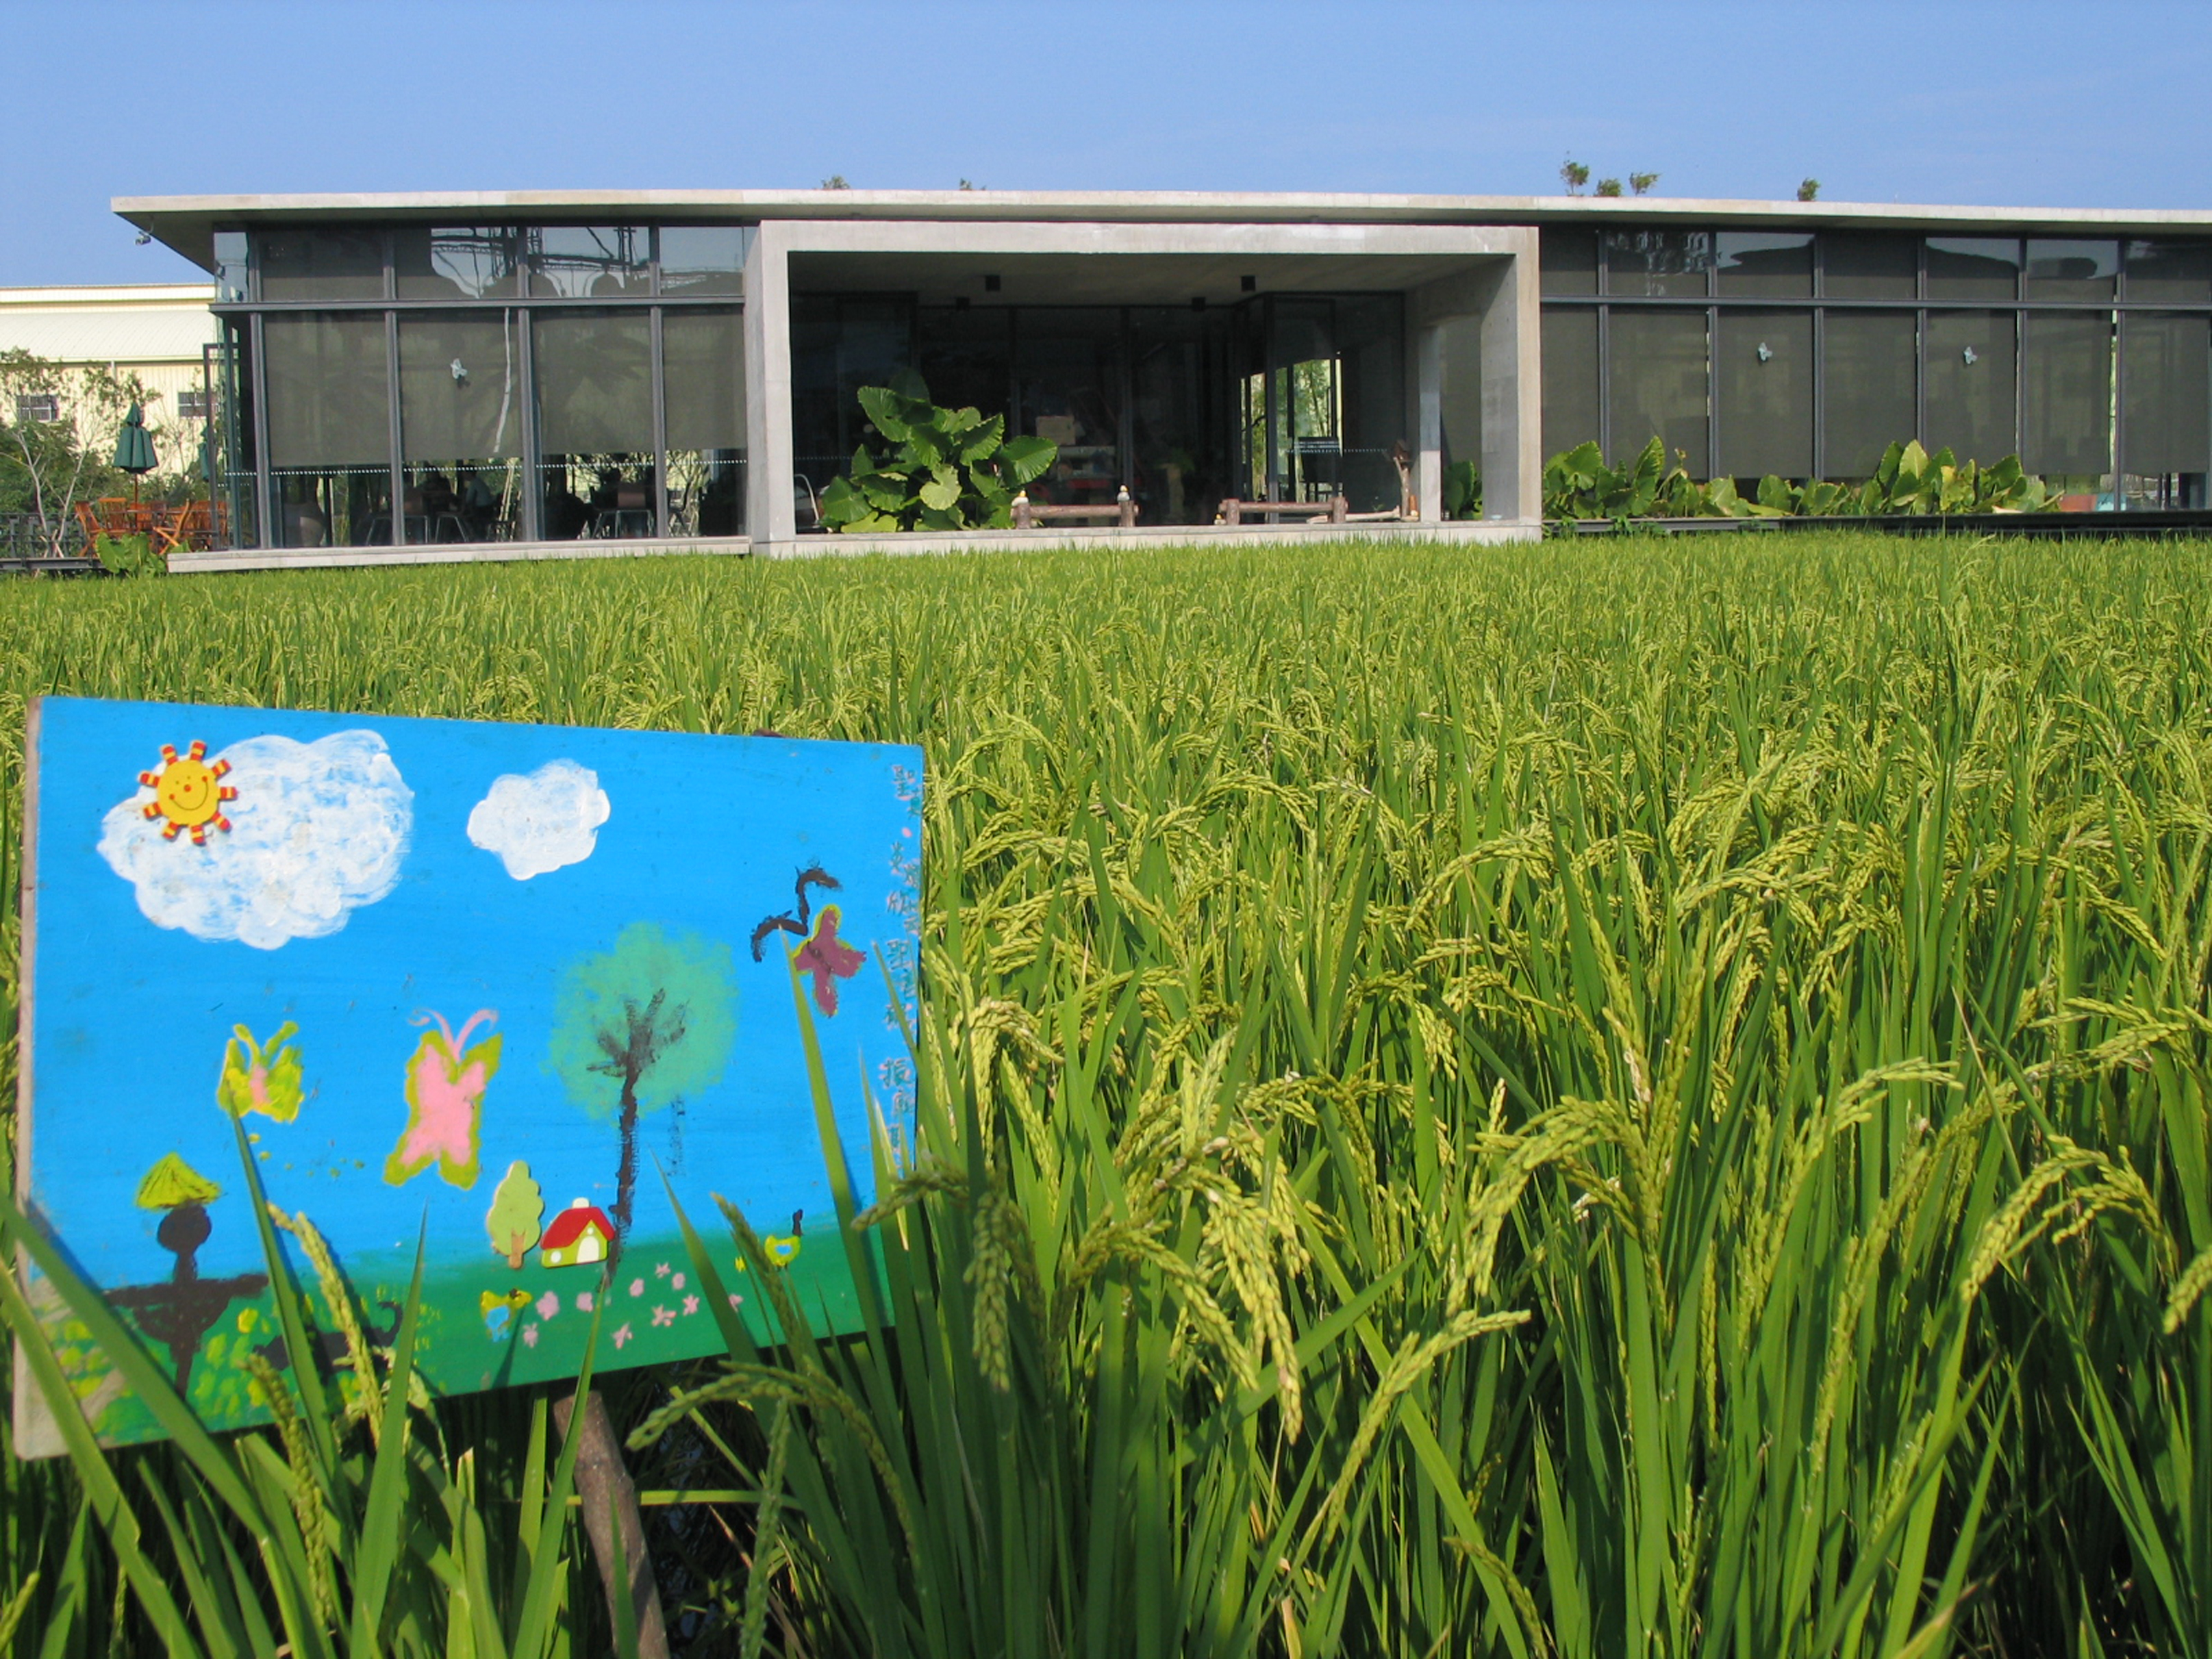 有機稻場是一棟「漂浮在稻田上的自然教室」。